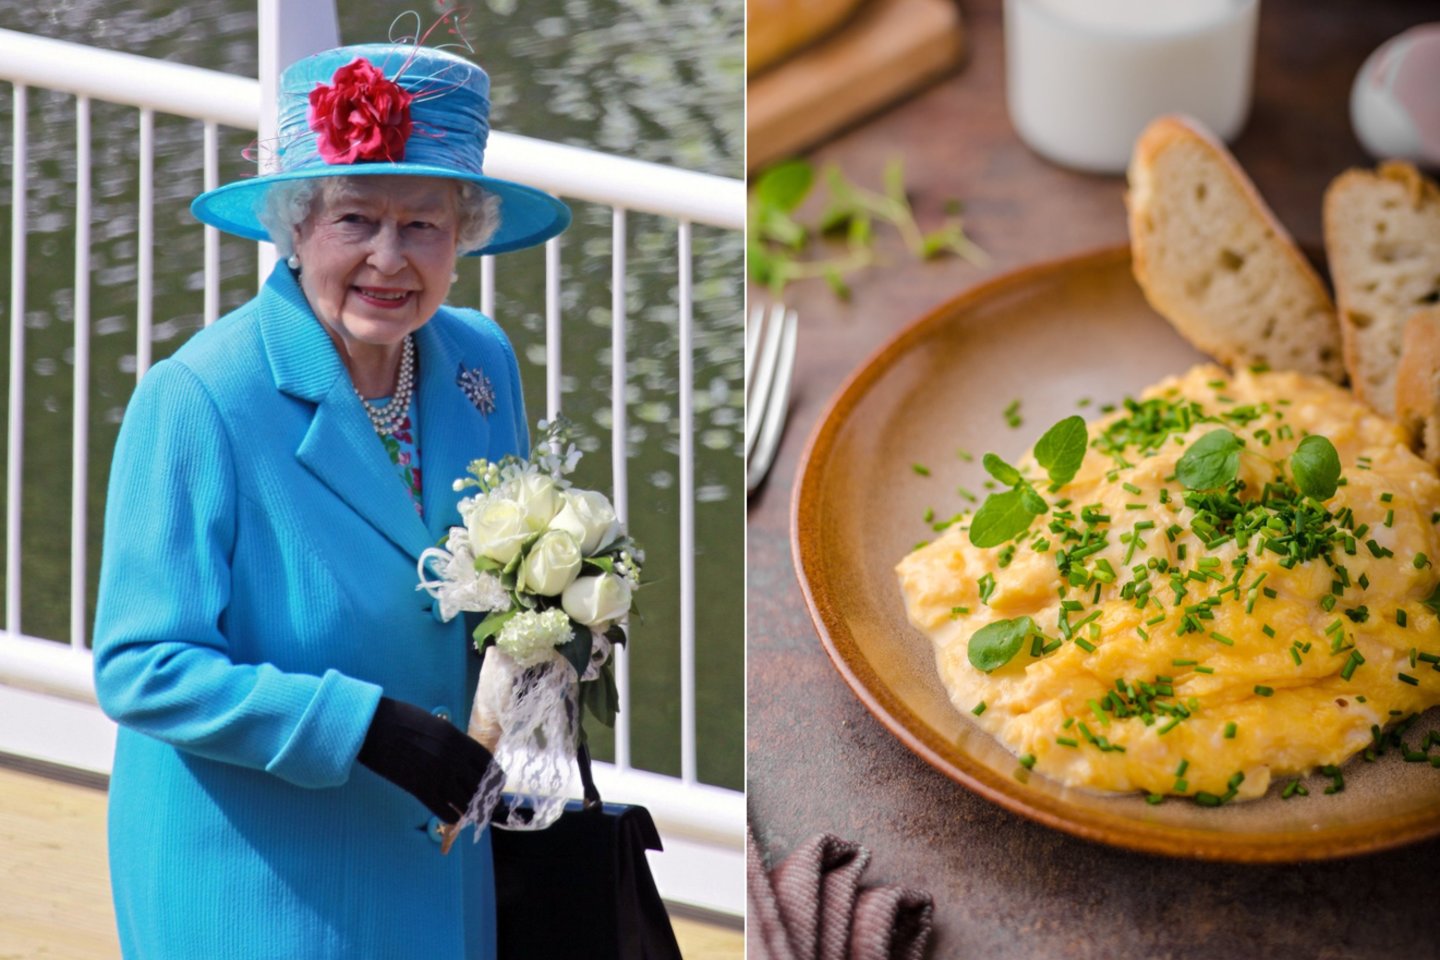 Elžbieta II mėgo pradėti dieną pusryčiais, kuriuose gausu baltymų, o ši kiaušinienė buvo ruošiama pagal receptą, kuris jai ypač patiko.<br> 123rf nuotr.